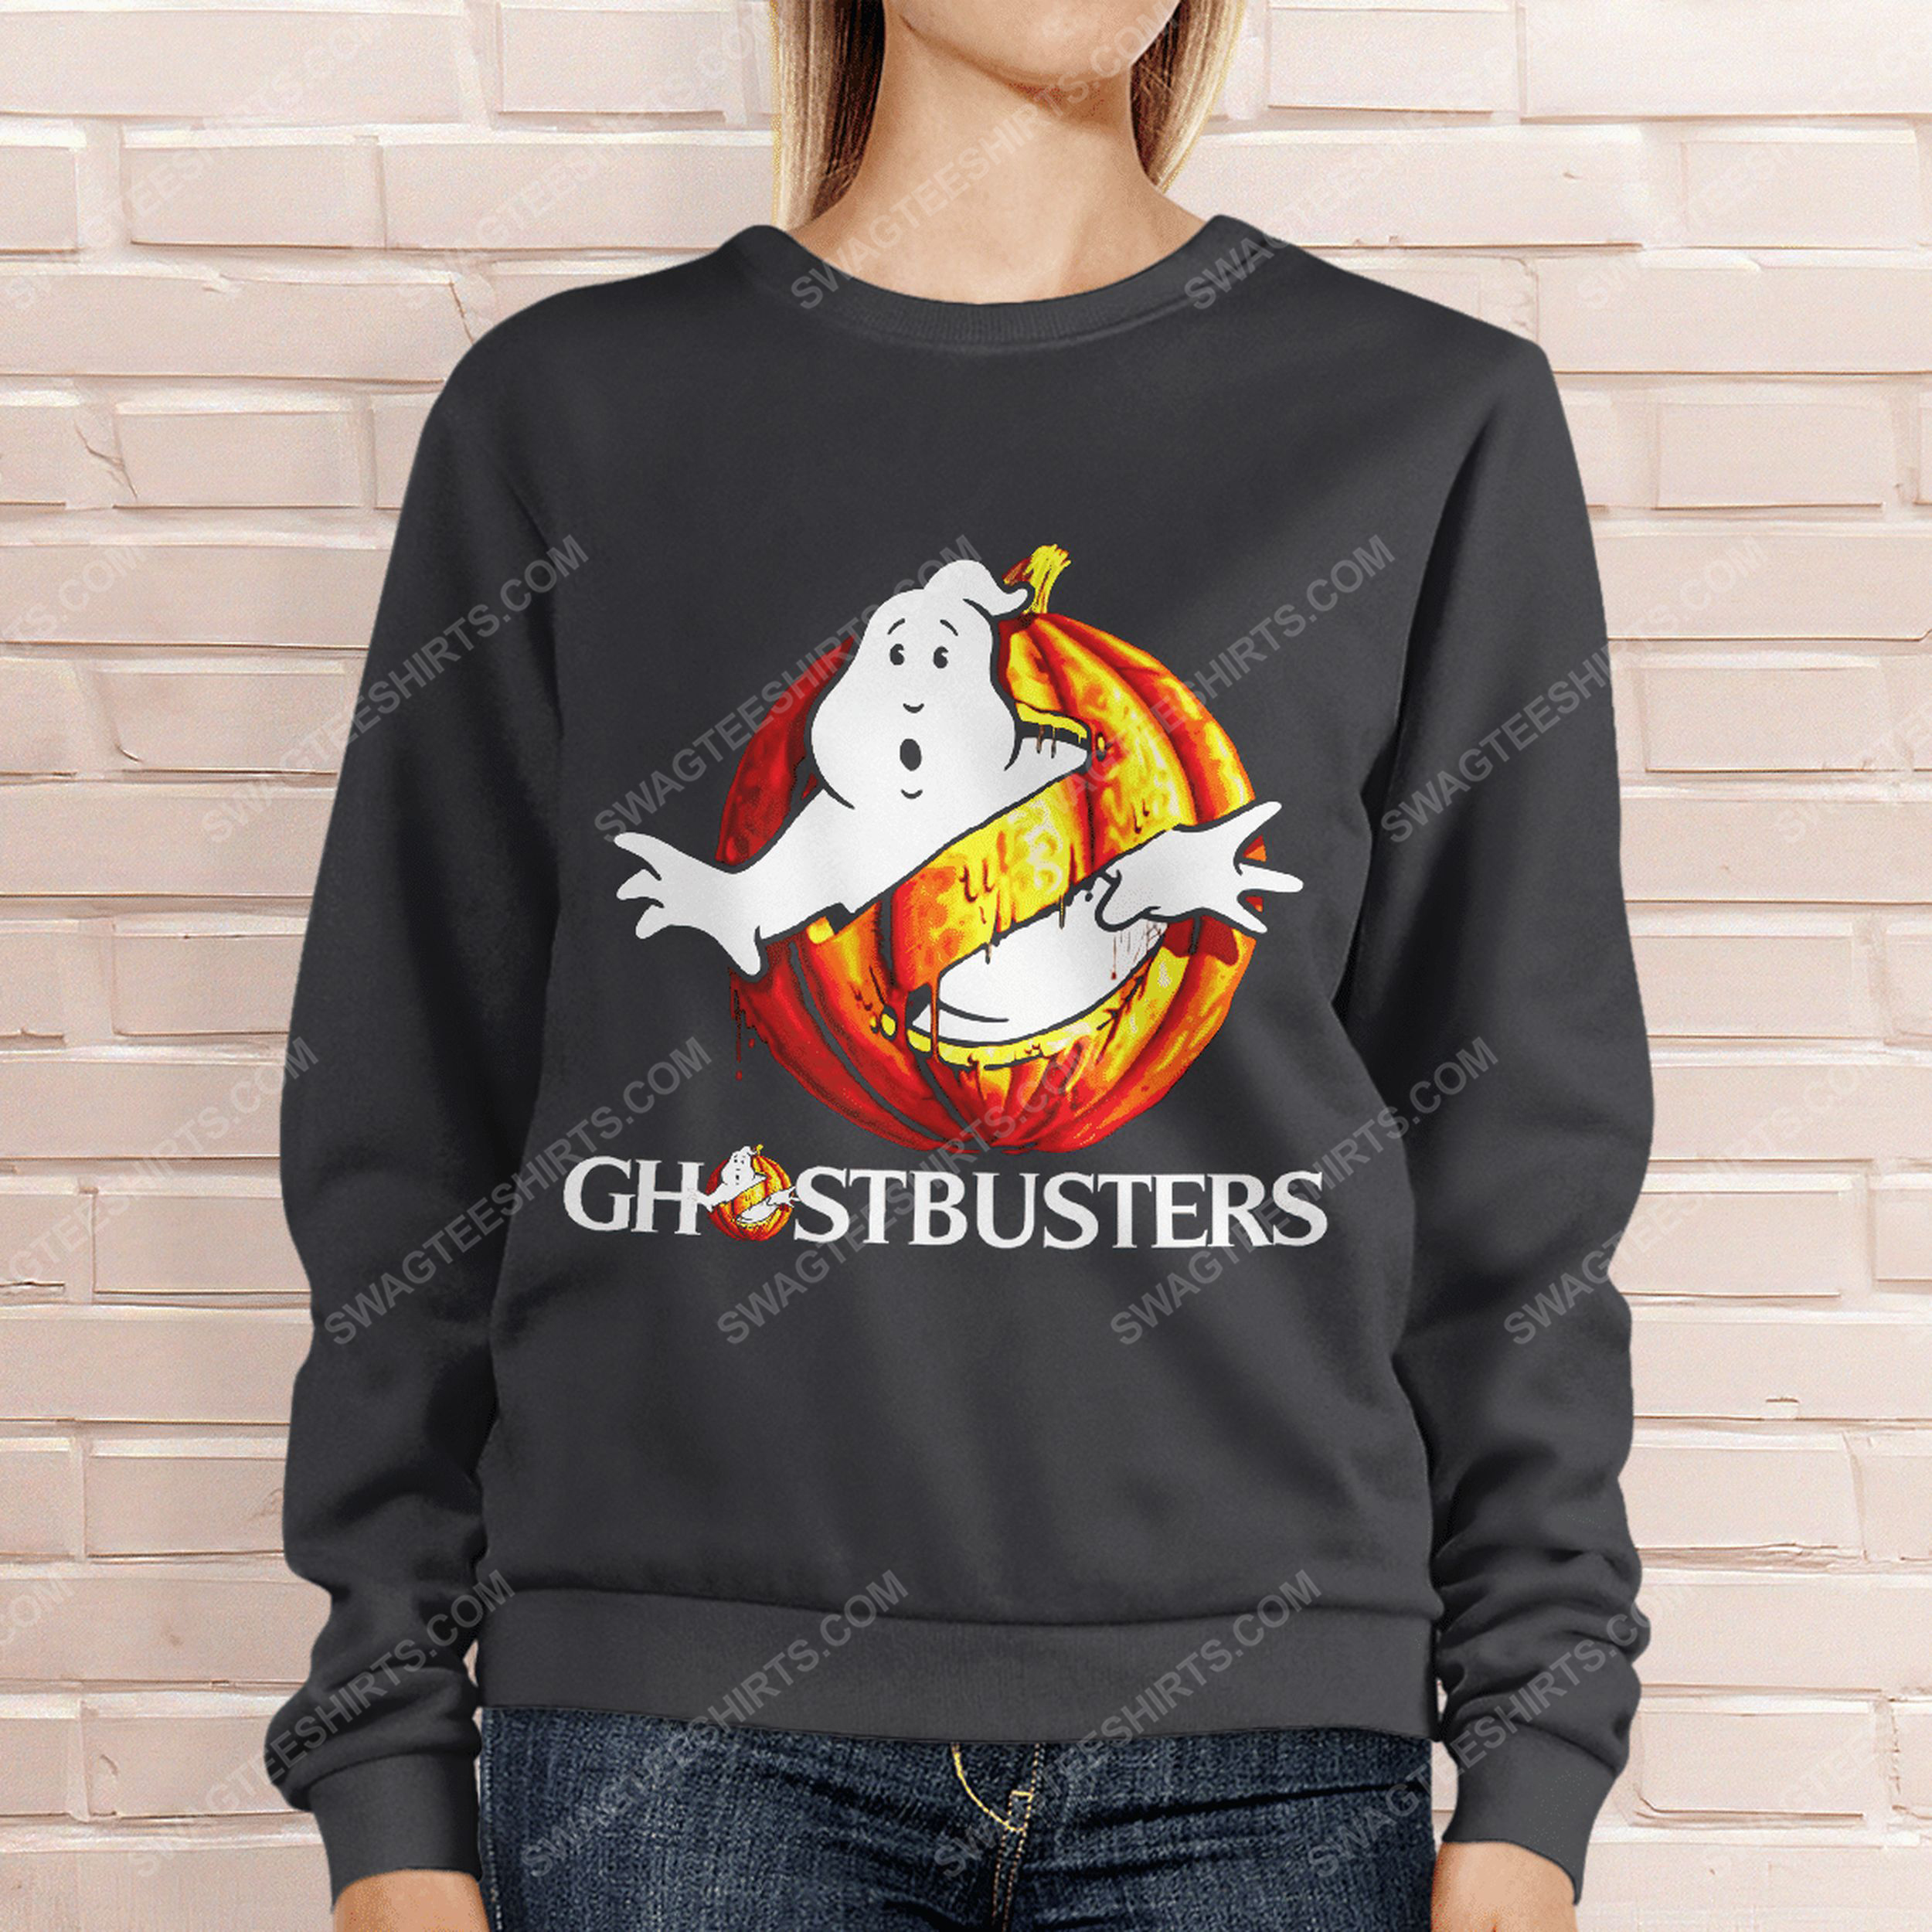 Ghostbusters with halloween pumpkin sweatshirt 1(1)